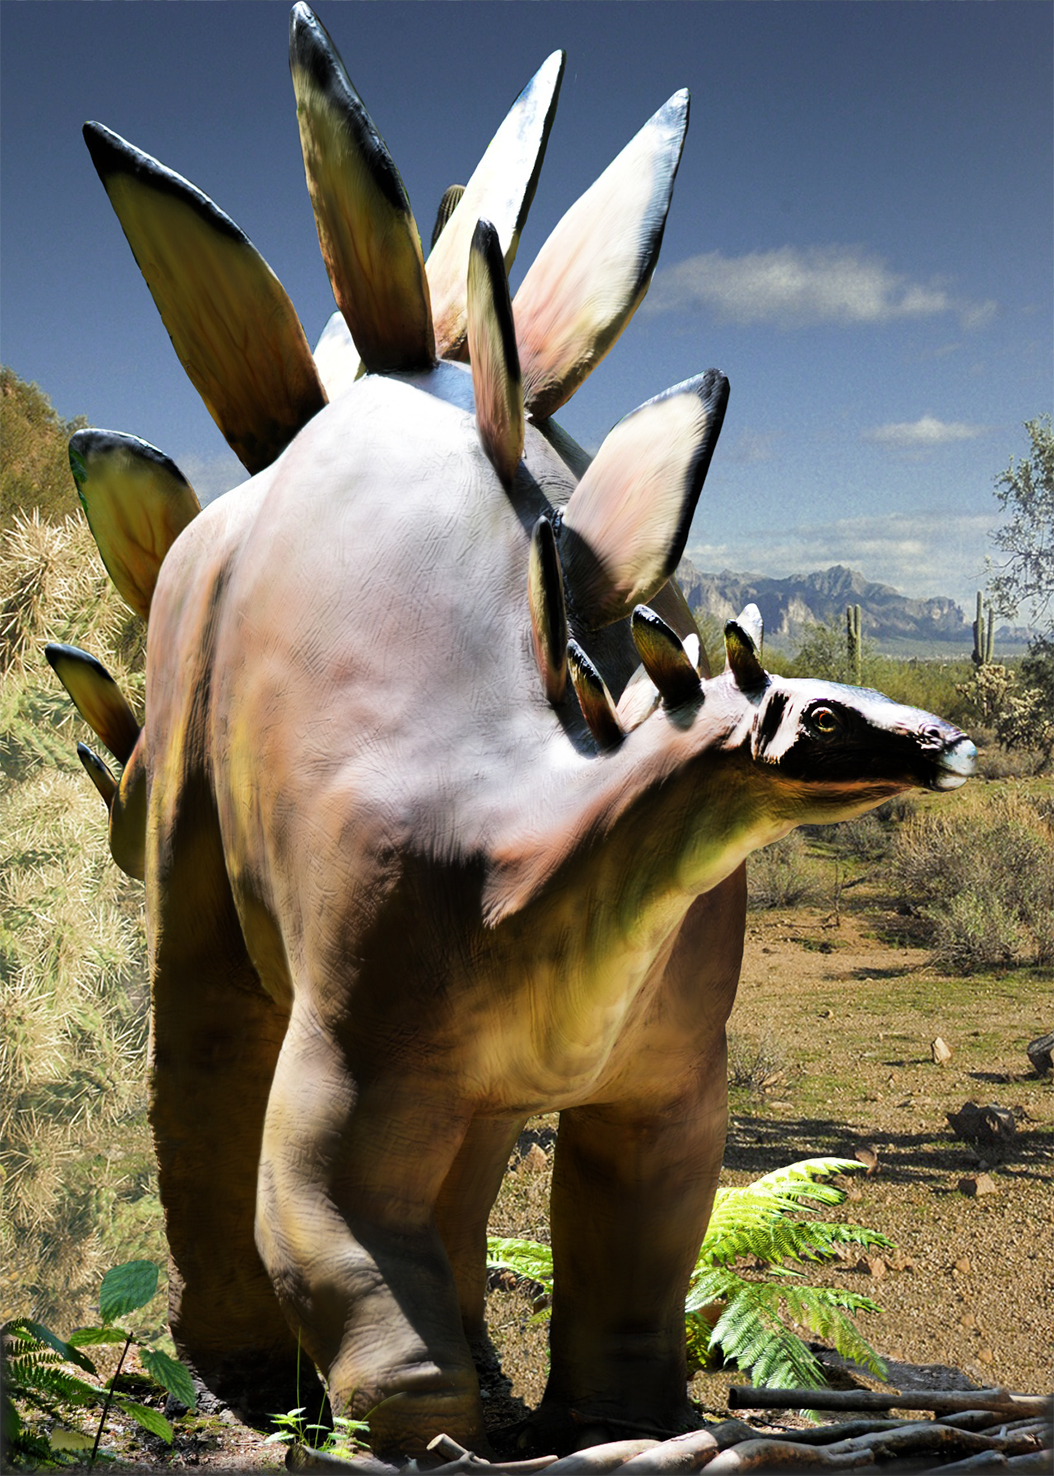 picture of stegosaurus dinosaur